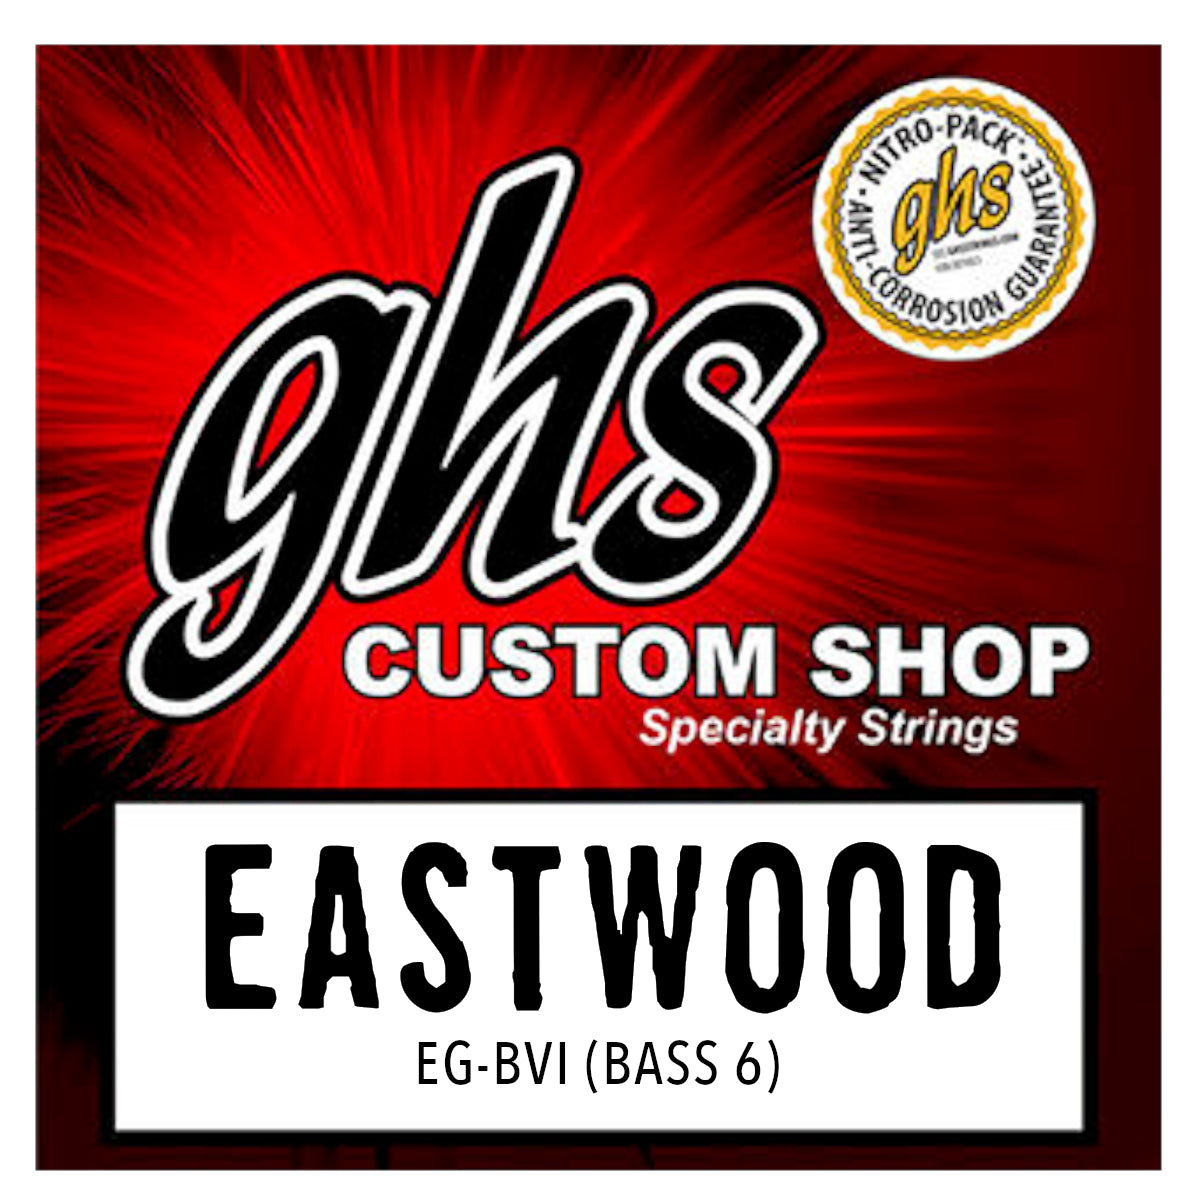 Eastwood/GHS Custom Strings - Bass 6